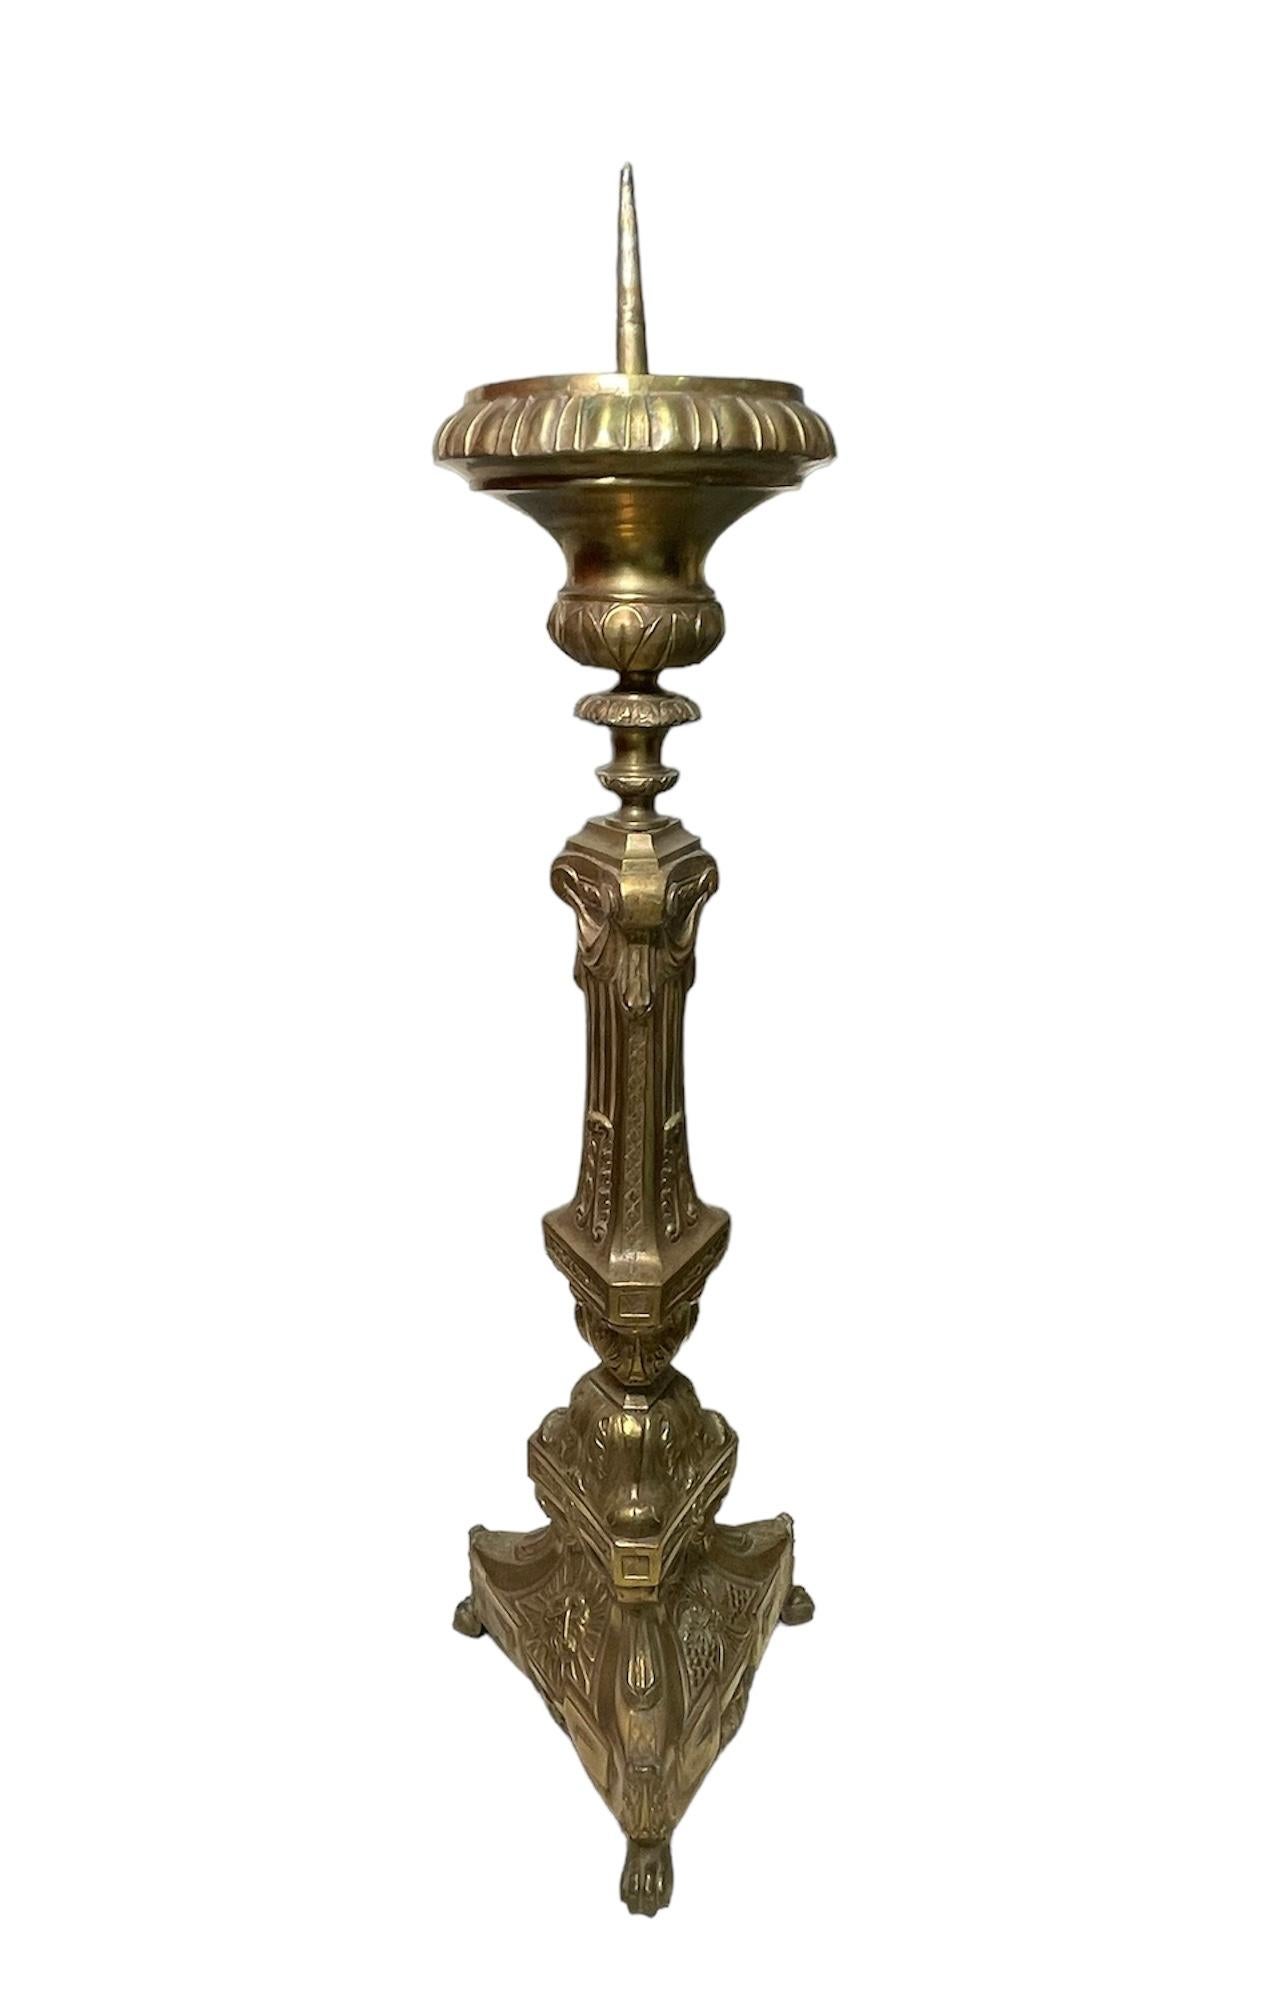 Dies ist ein Empire-Stil Bronze Kerzenhalter oder Kerzenständer. Es handelt sich um einen Kerzenhalter aus vergoldeter Bronze, der mit einem Hochrelief aus Weizenzweigen, Weinreben, Akanthusblättern, Lorbeerblättern und Säumen verziert ist. Der